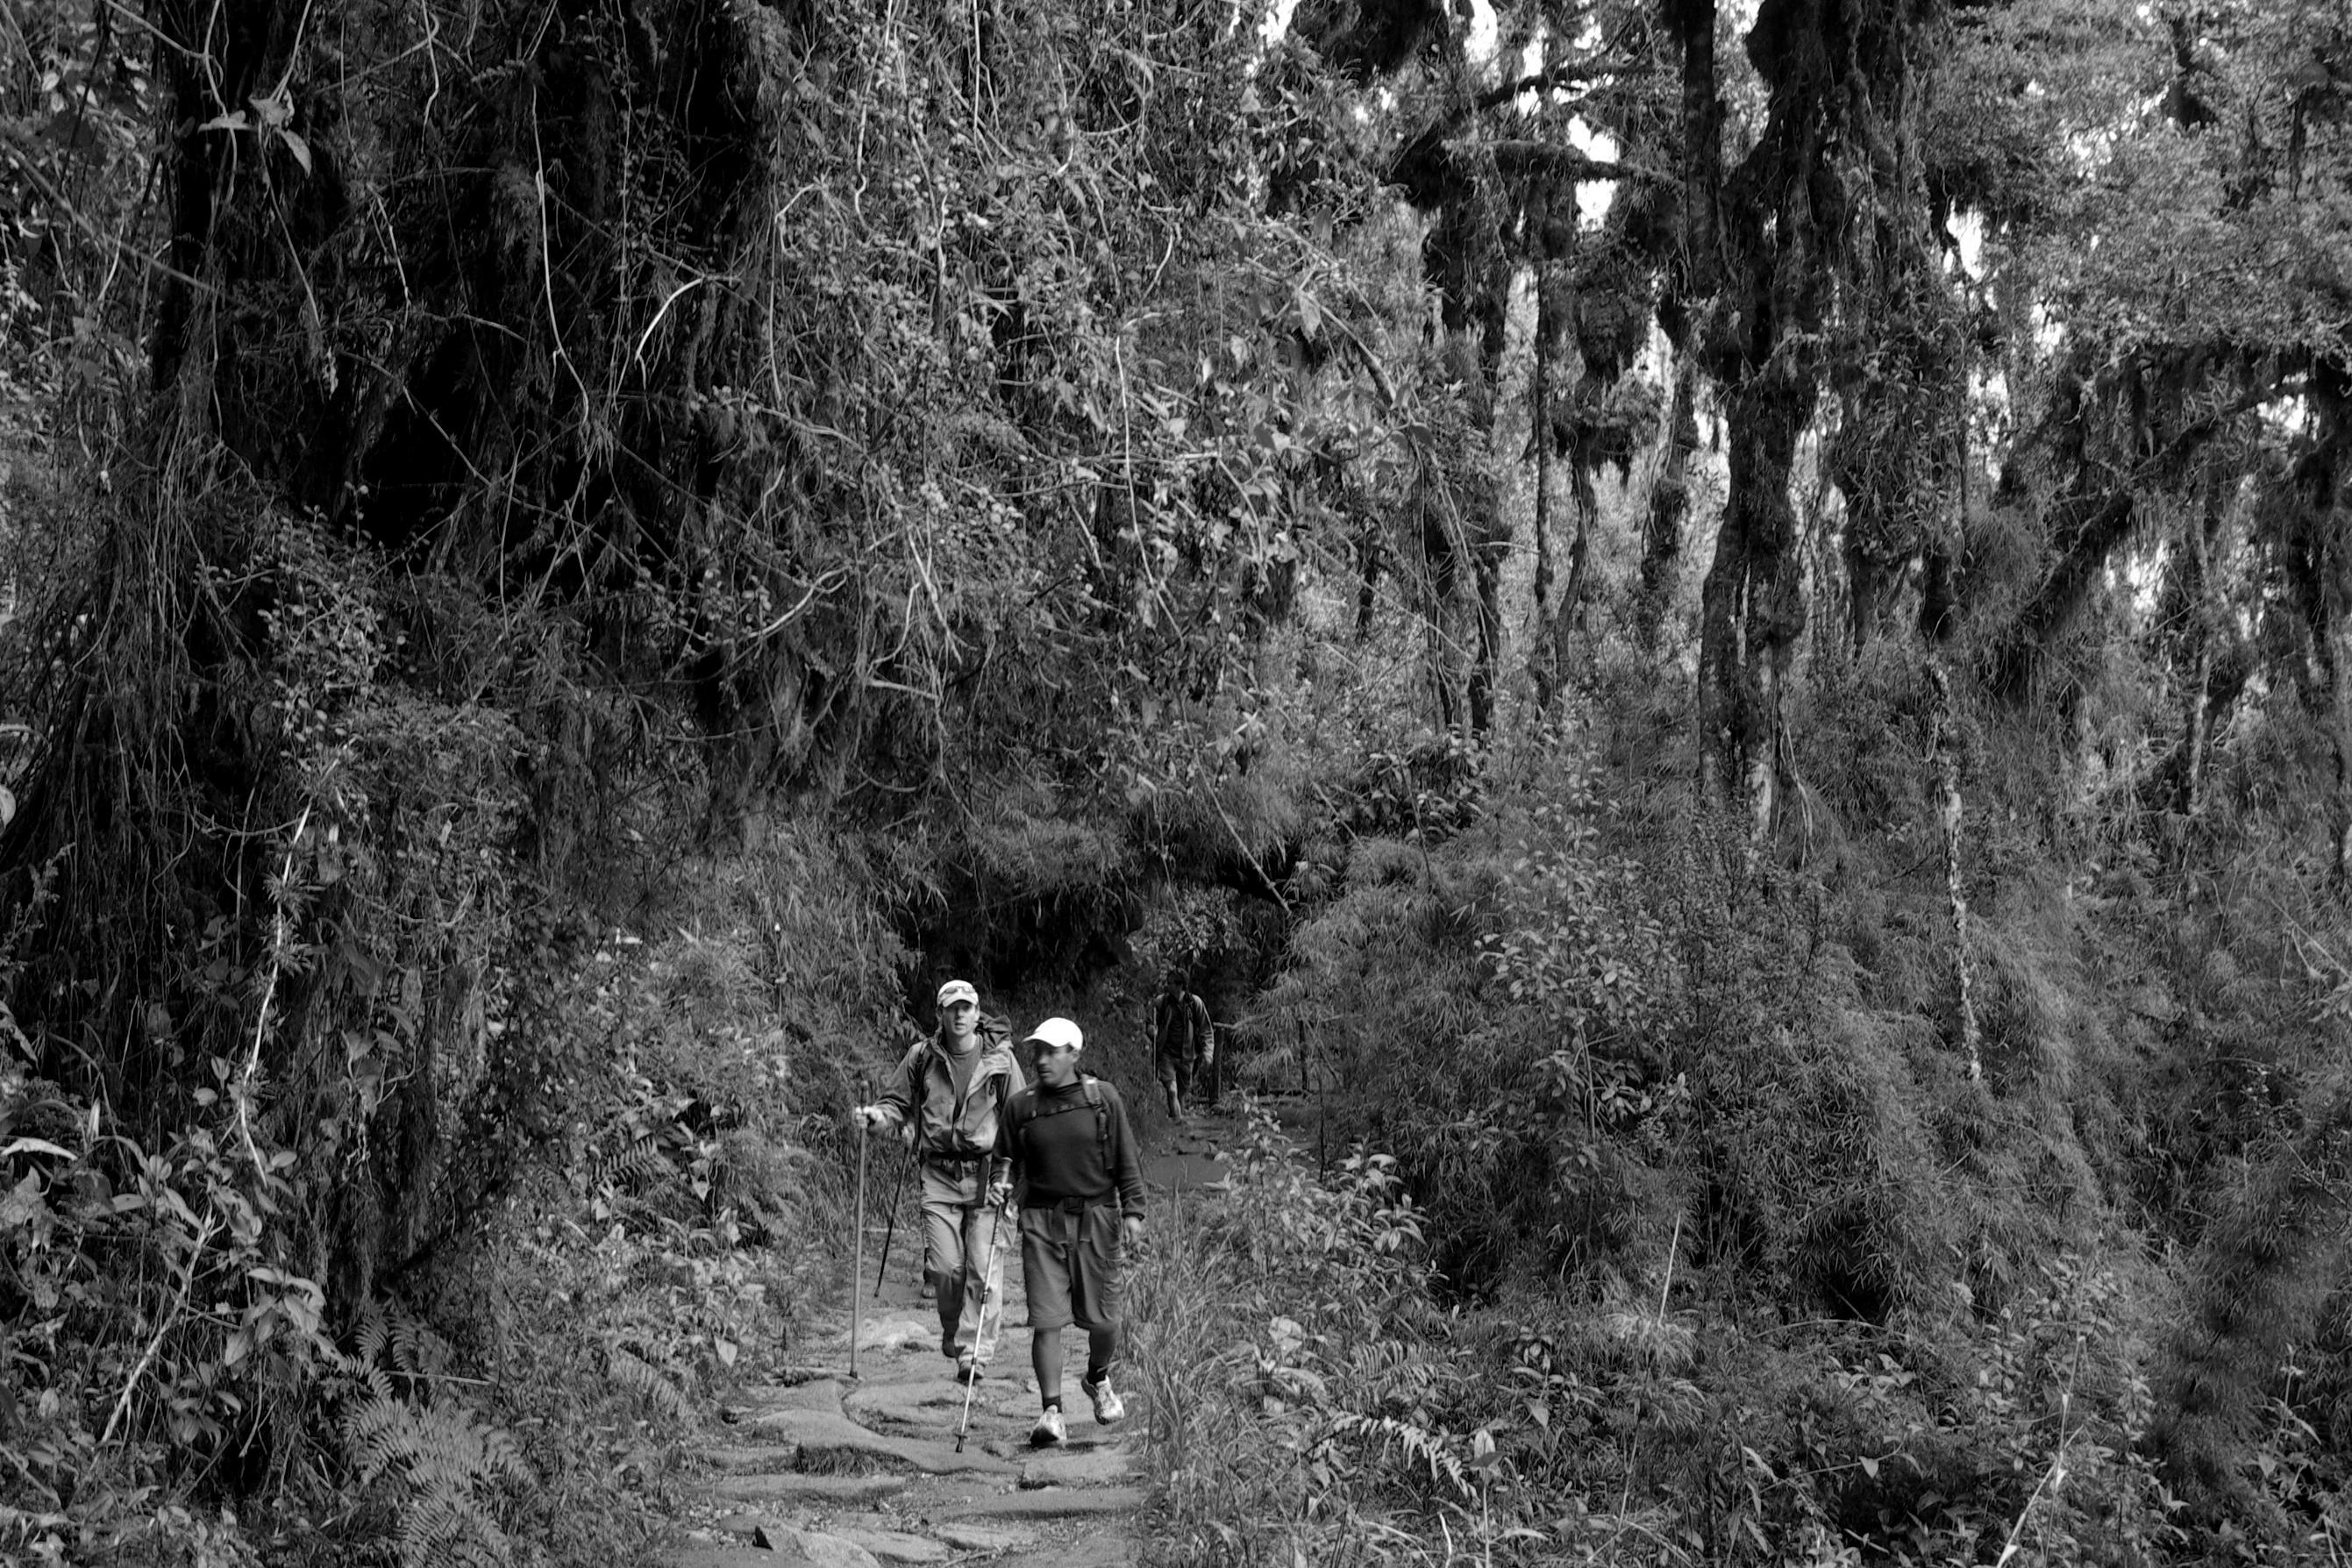 Day 3: The Inka Trail